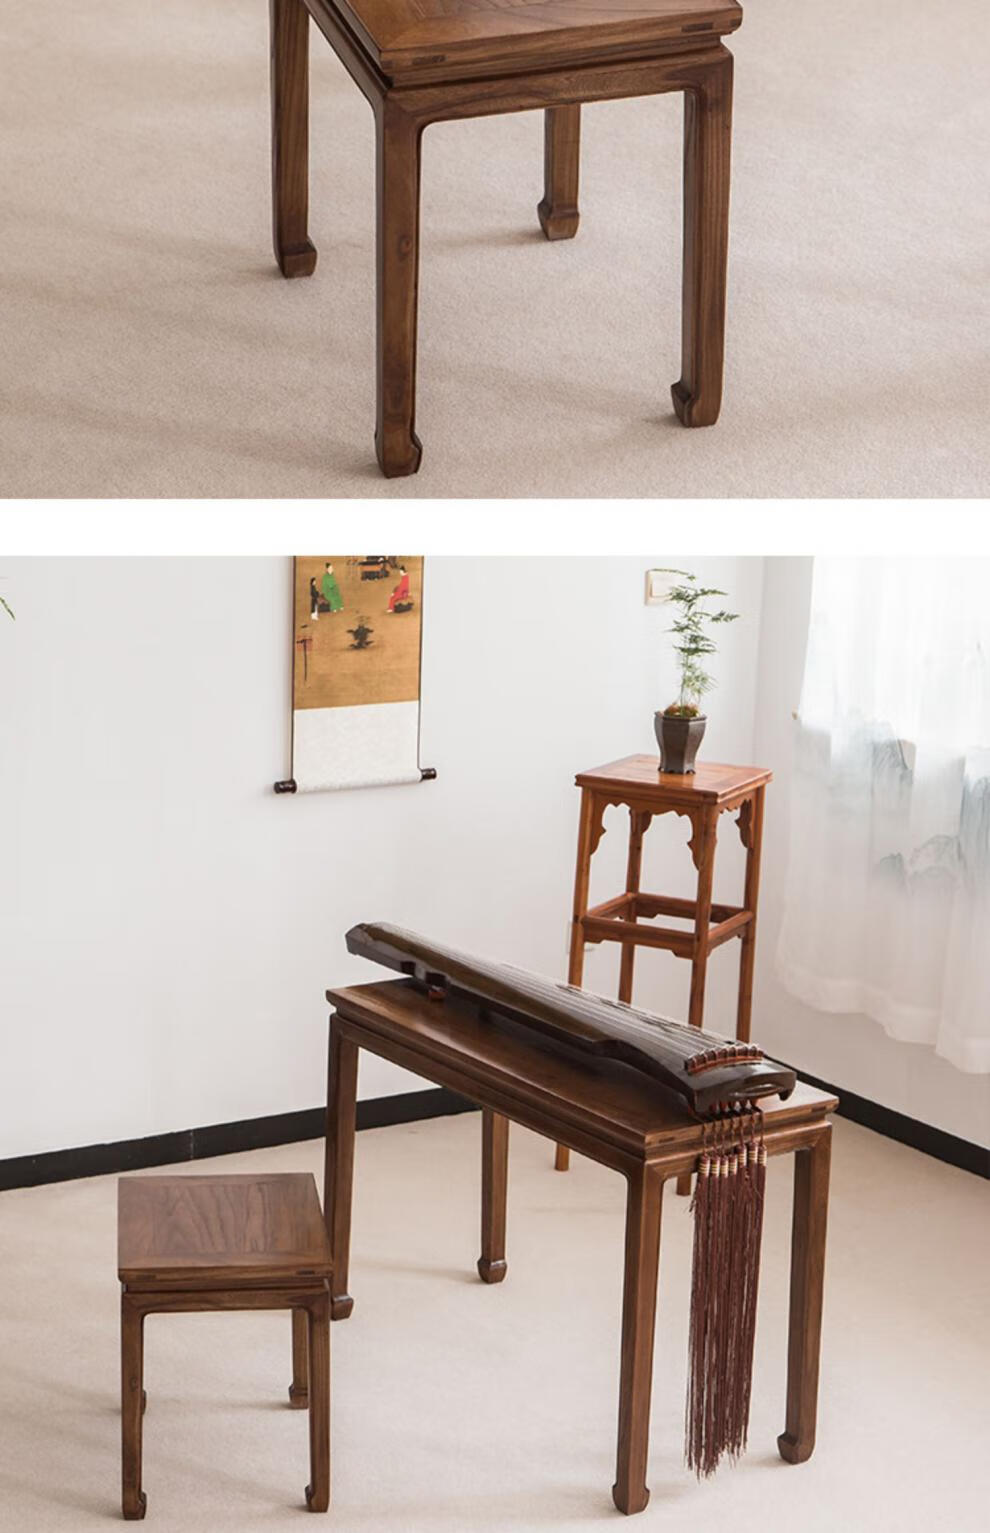 古琴桌 老榆木古琴桌凳共鸣琴桌实木新中式国学书法桌椅黑胡桃木禅意